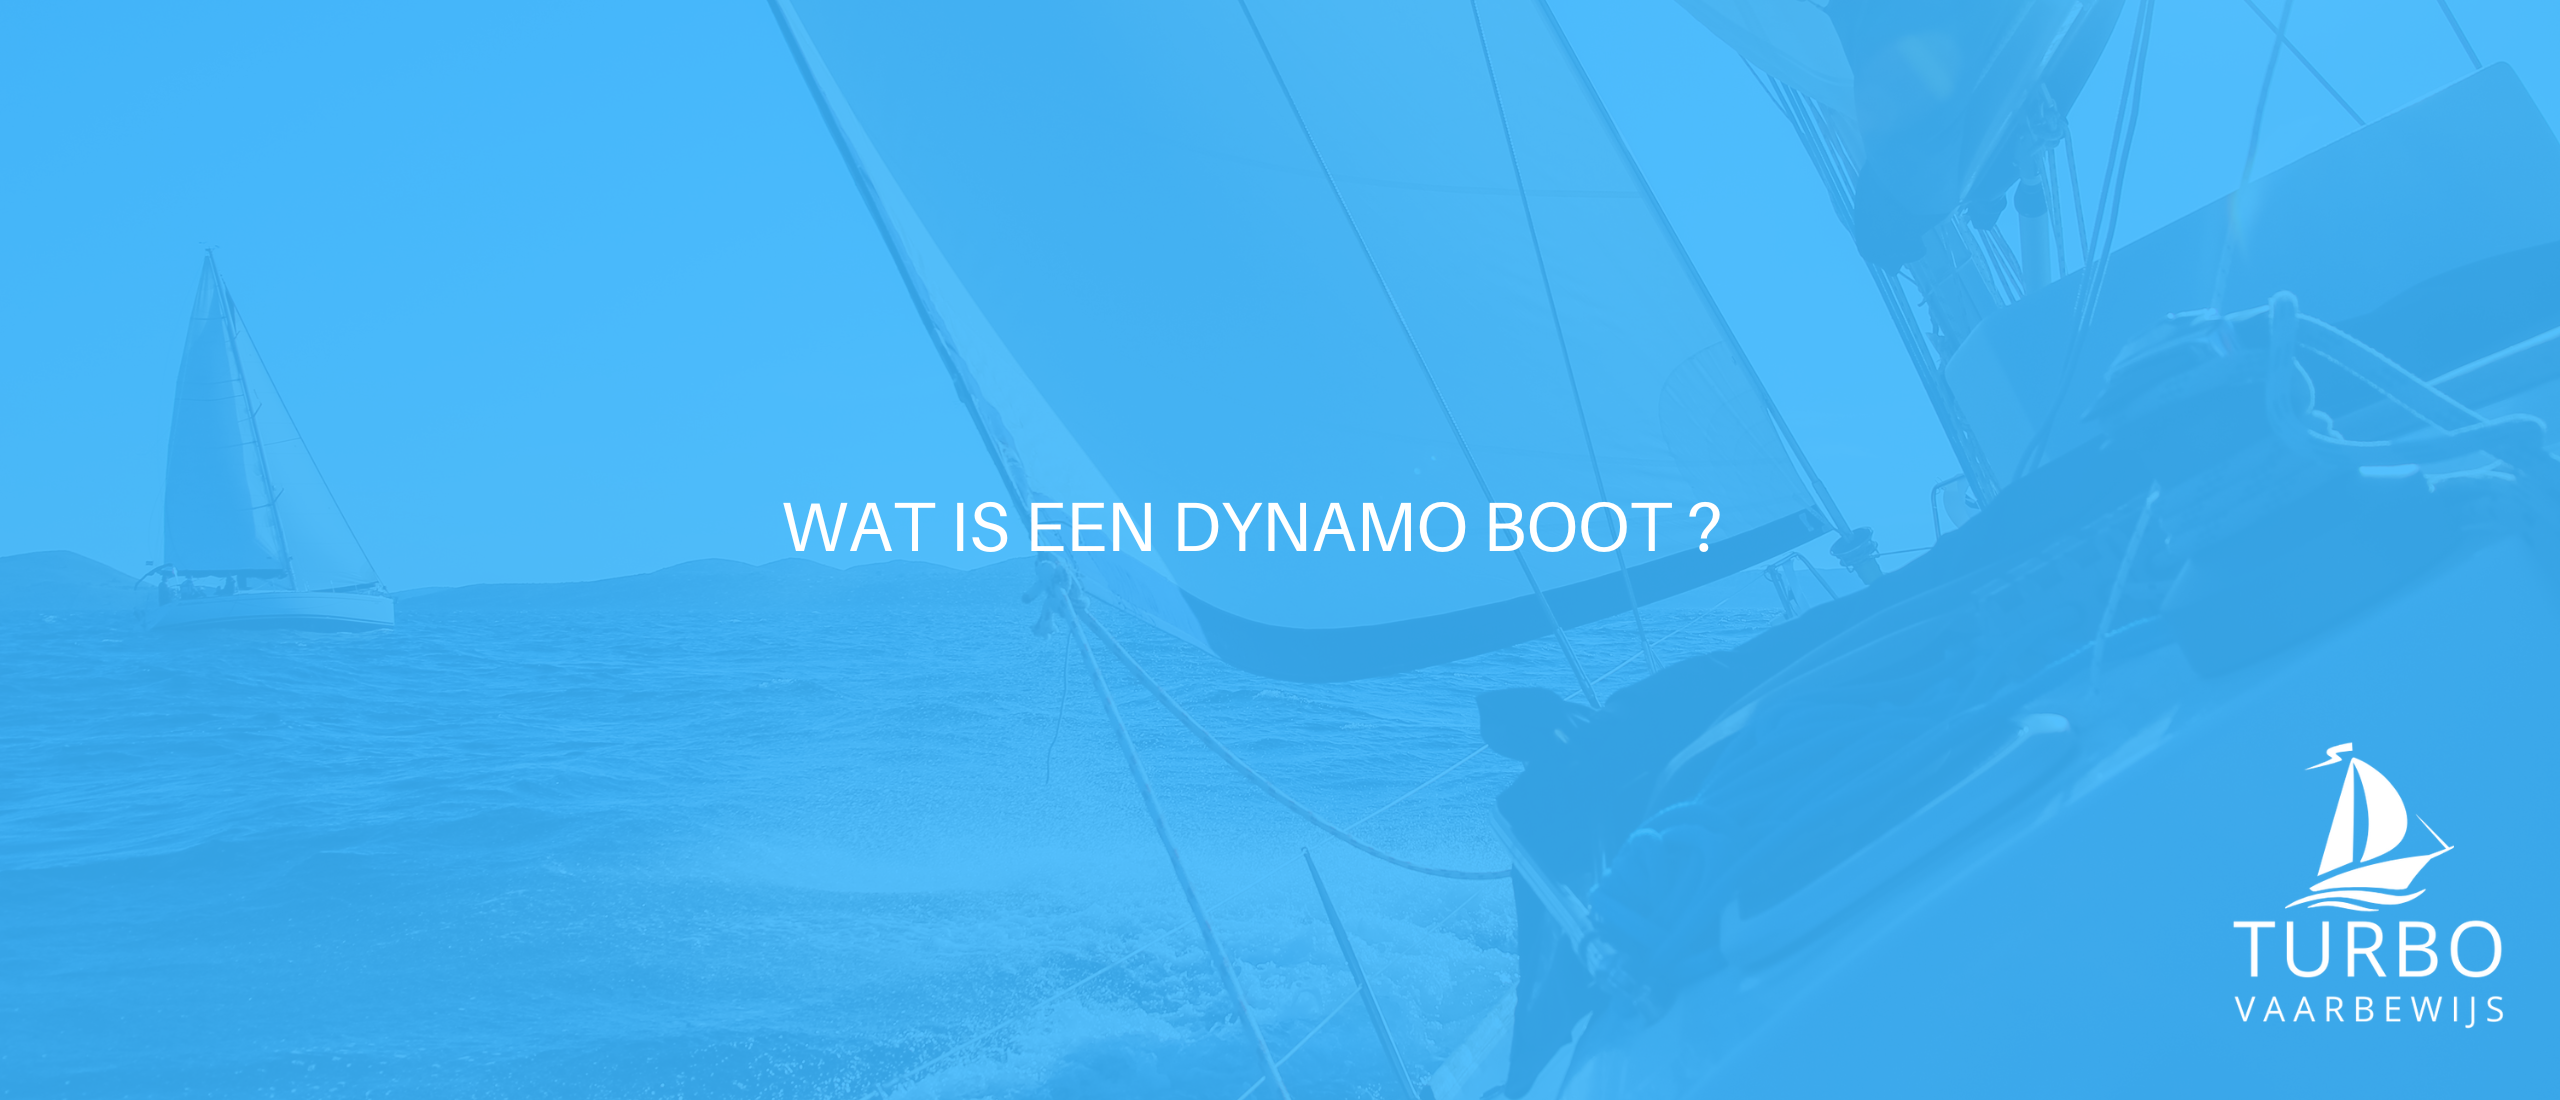 Wat is een dynamo boot?